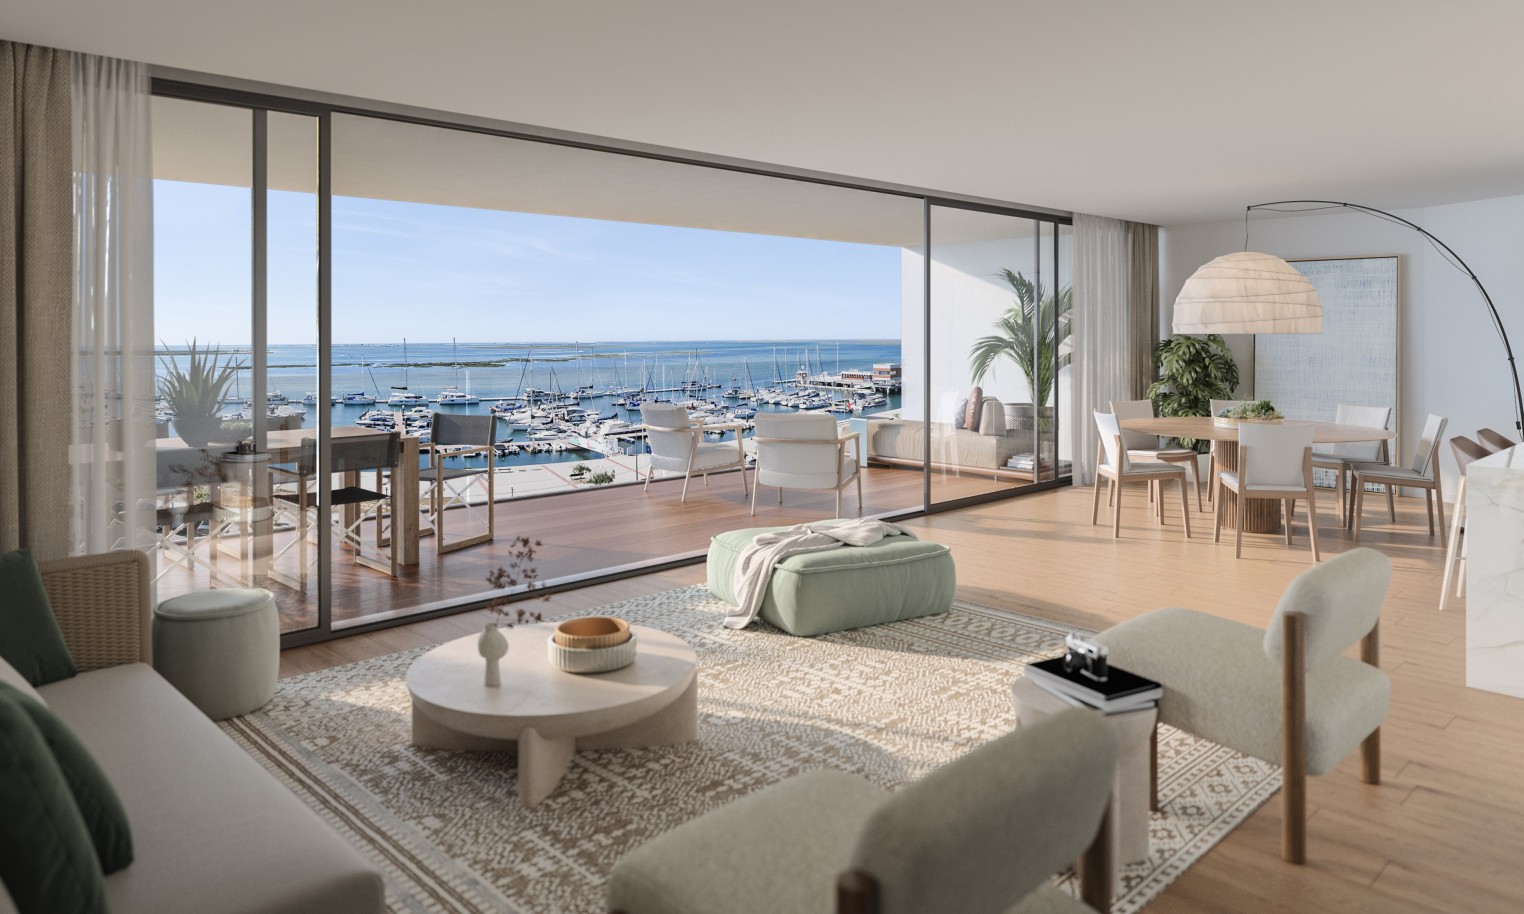 Pisos nuevos con vistas al mar, 1, 2 y 3 dormitorios, en venta en Olhão, Algarve_243873